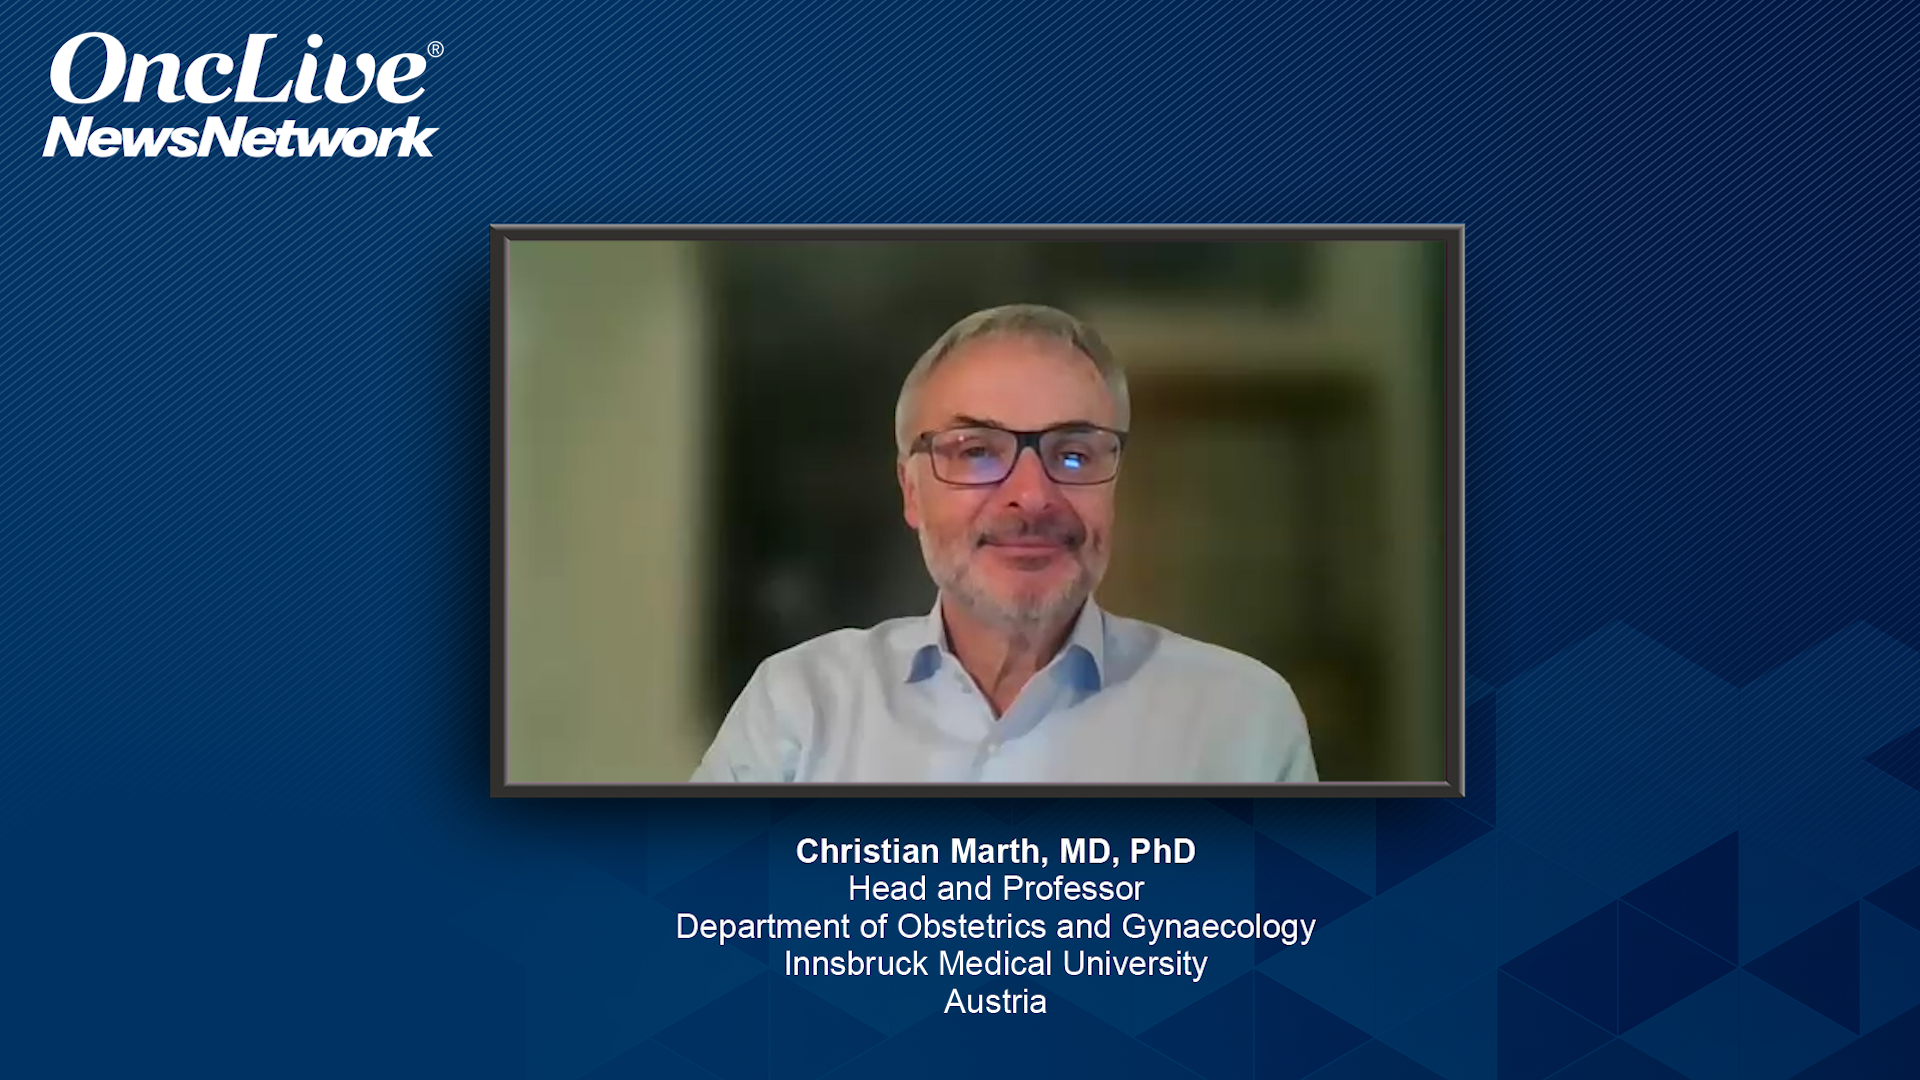 Christian Marth, MD, PhD